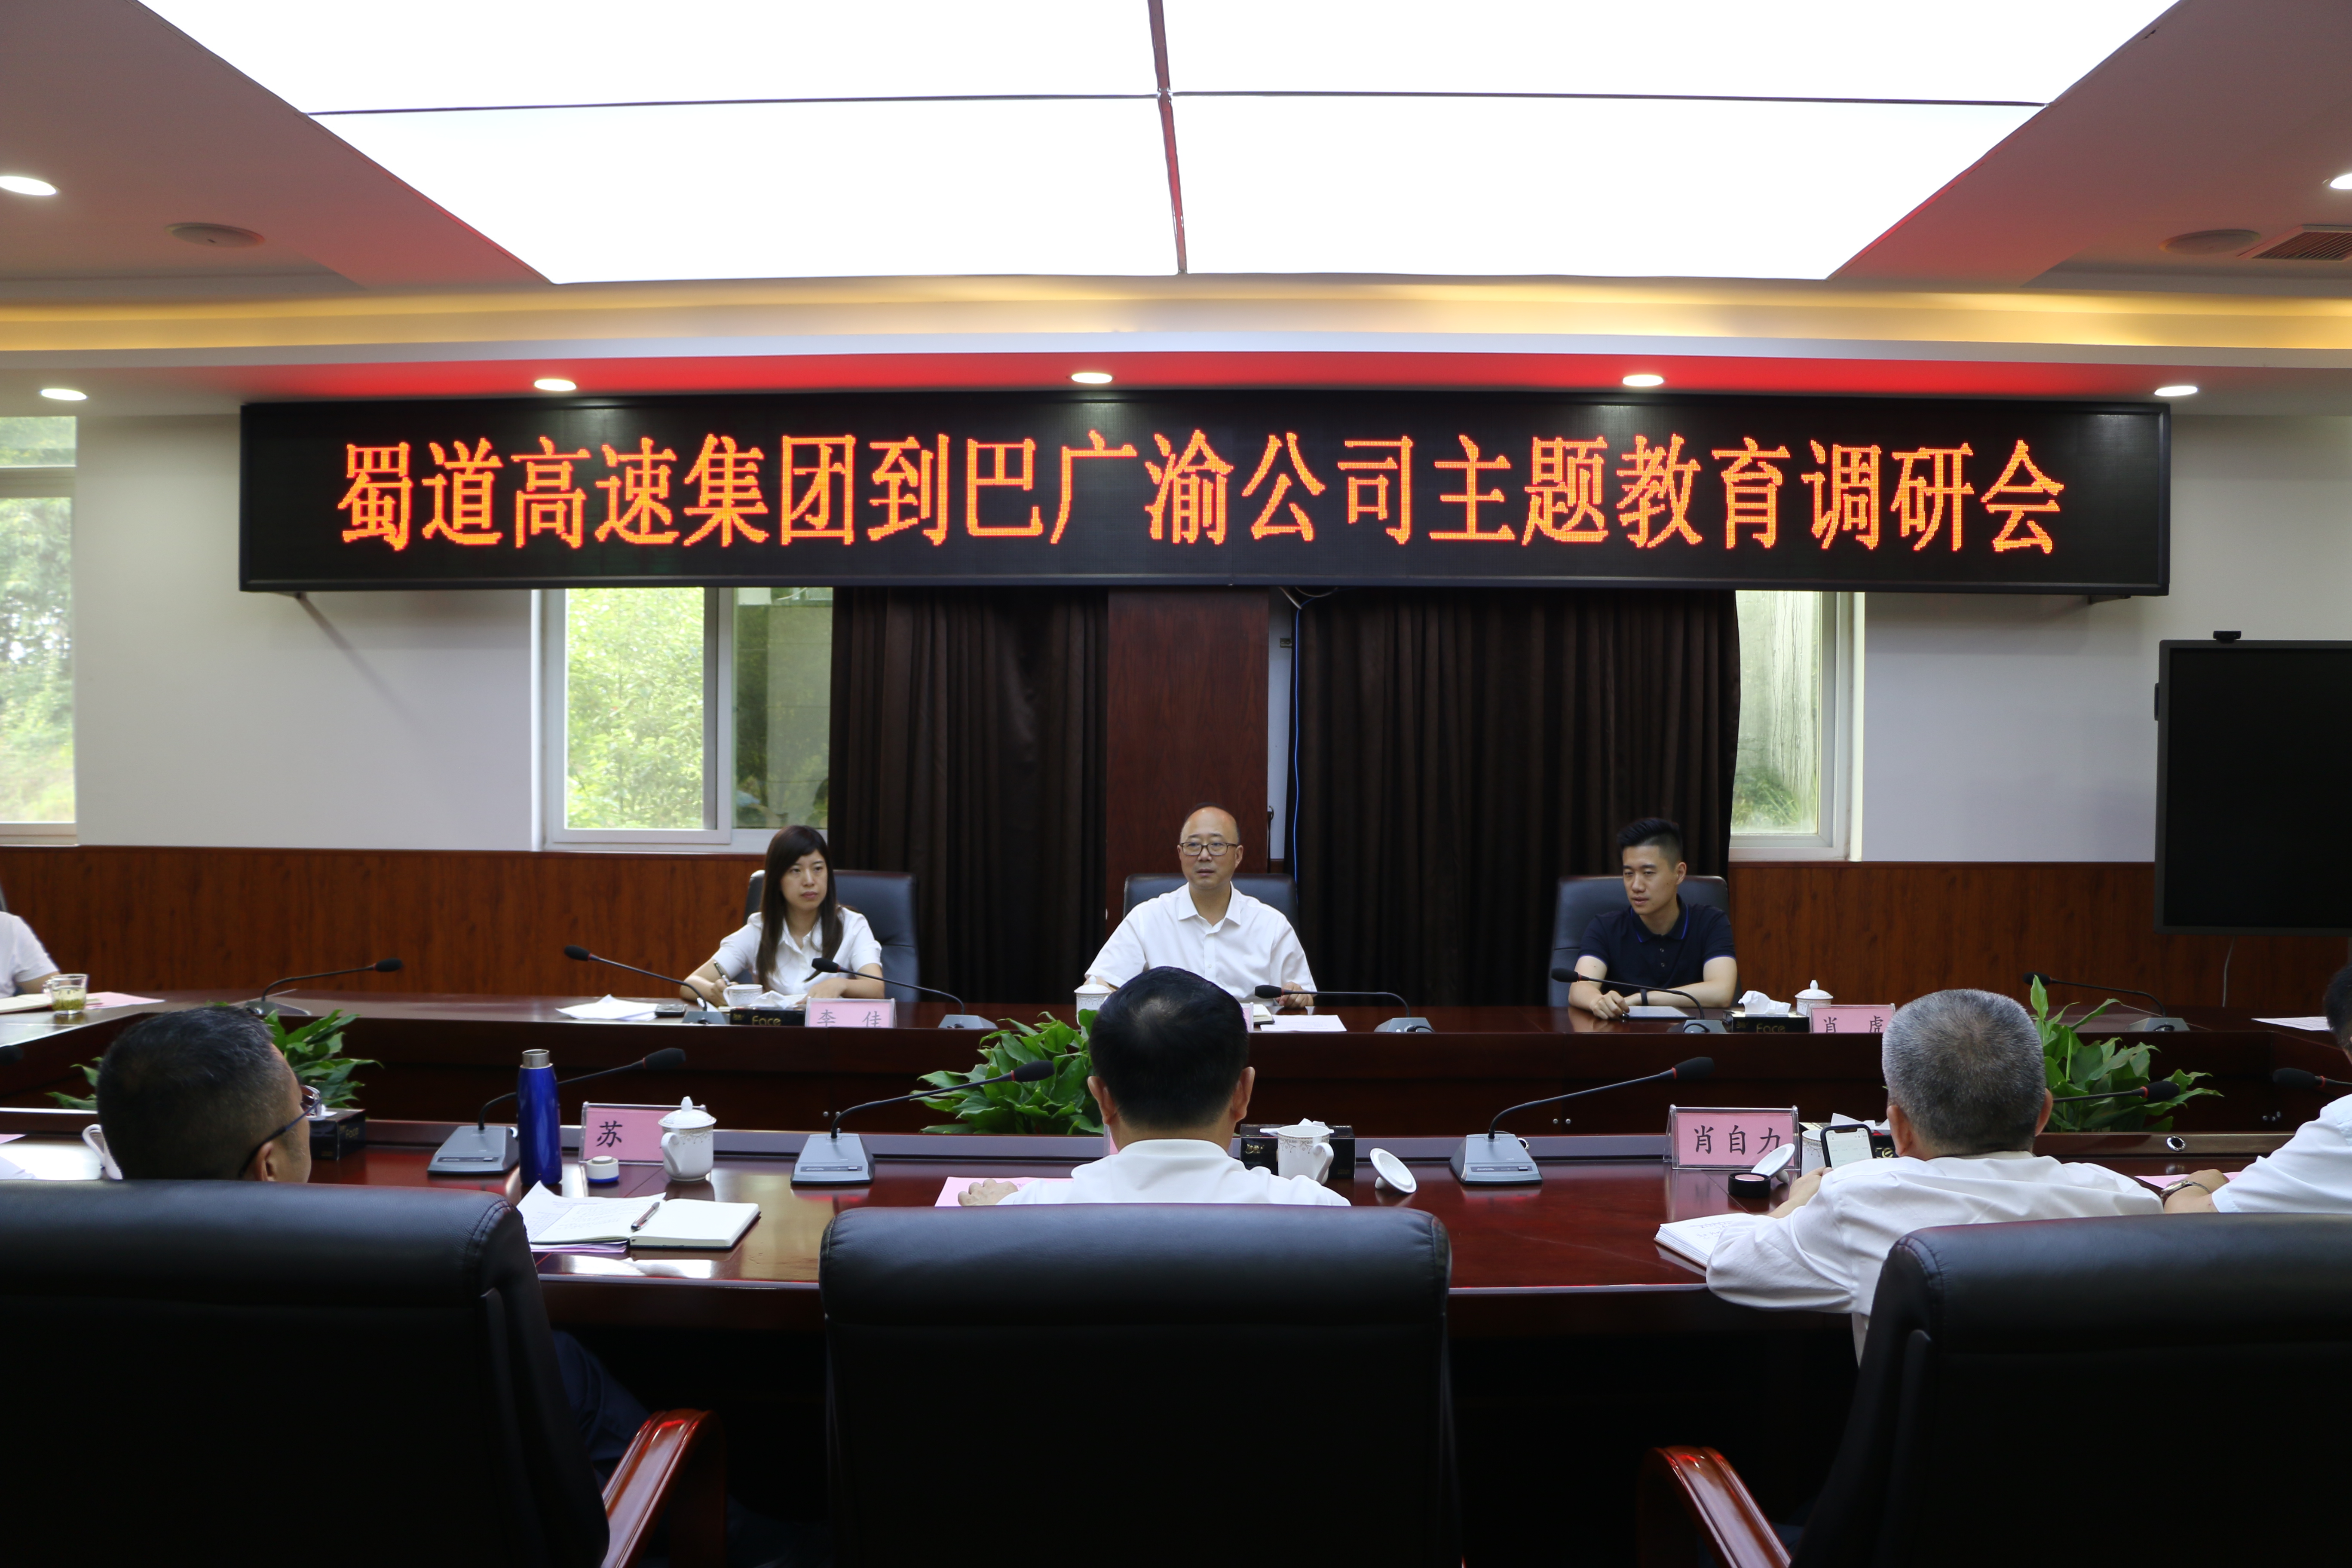 蜀道高速集团副总经理鲜峻岭一行到巴广渝公司开展主题教育调研